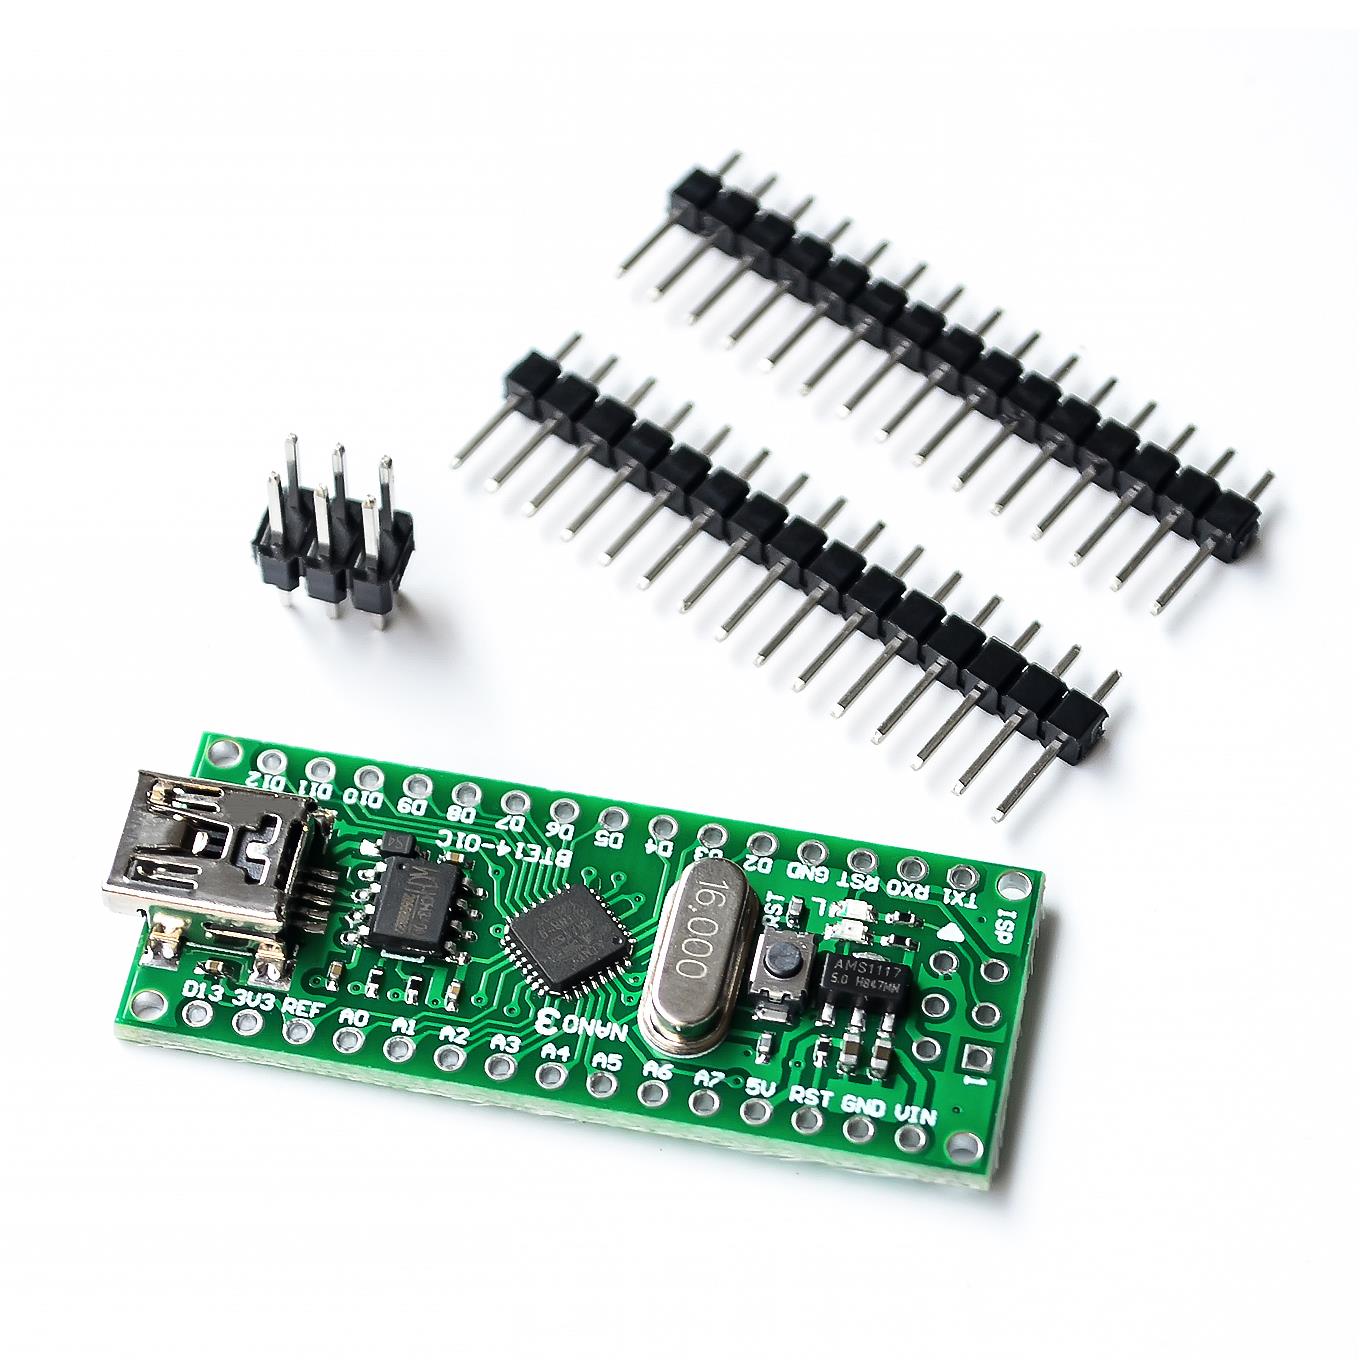 Nano V3 ATmega168 microcontroller (16MHz) Board